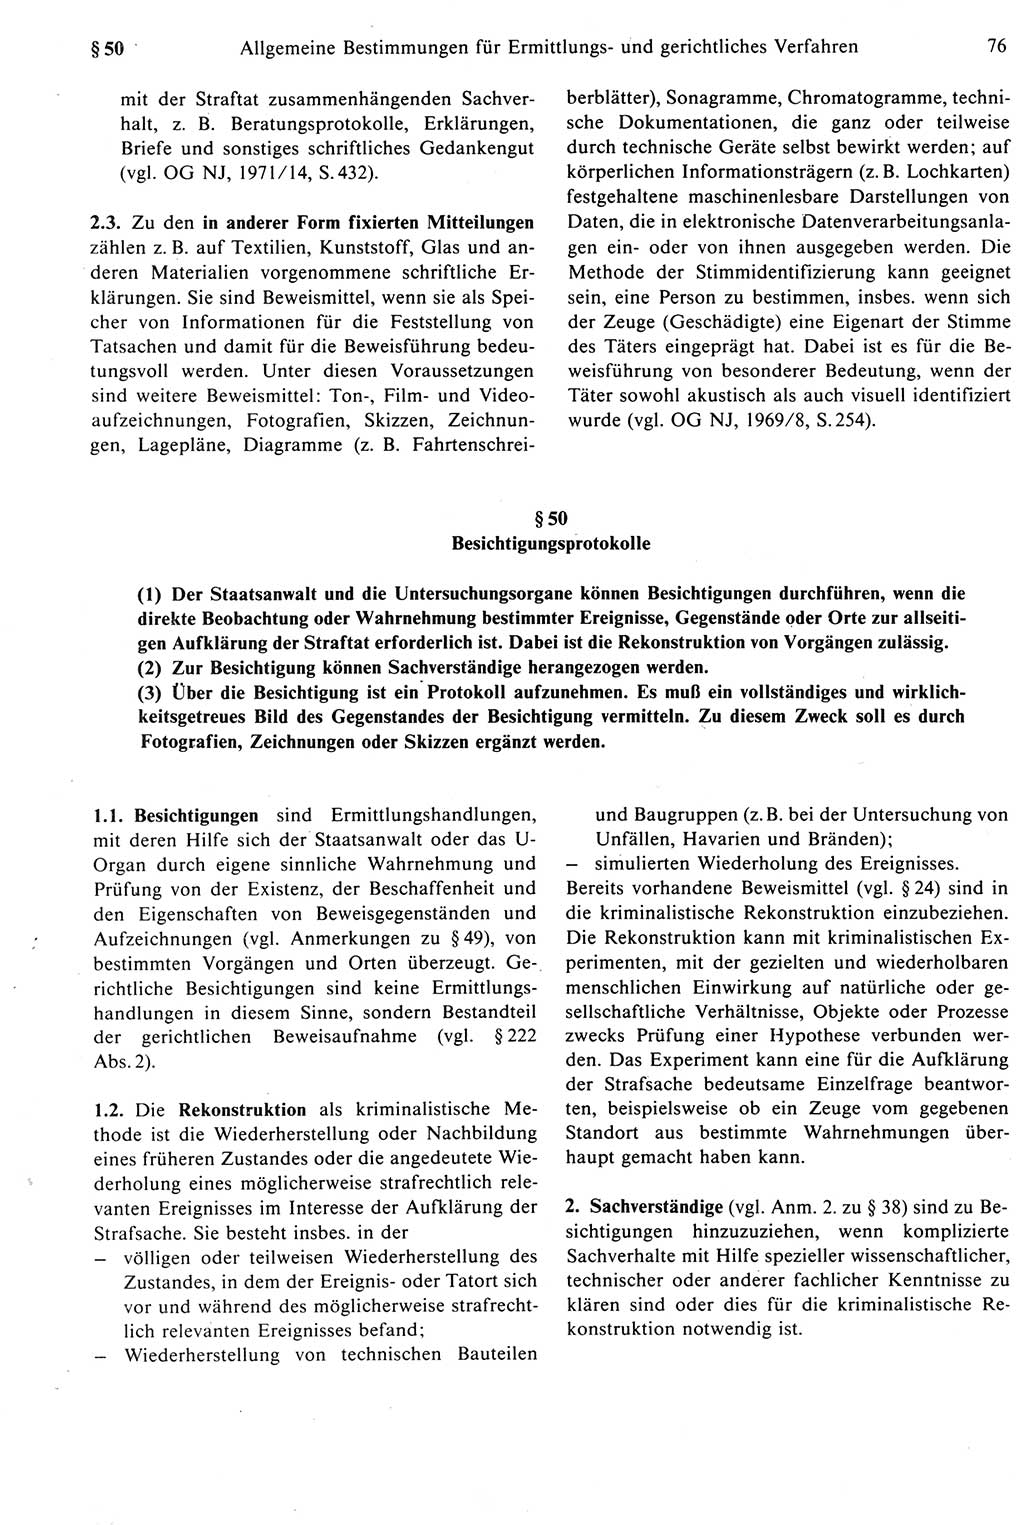 Strafprozeßrecht der DDR [Deutsche Demokratische Republik], Kommentar zur Strafprozeßordnung (StPO) 1987, Seite 76 (Strafprozeßr. DDR Komm. StPO 1987, S. 76)